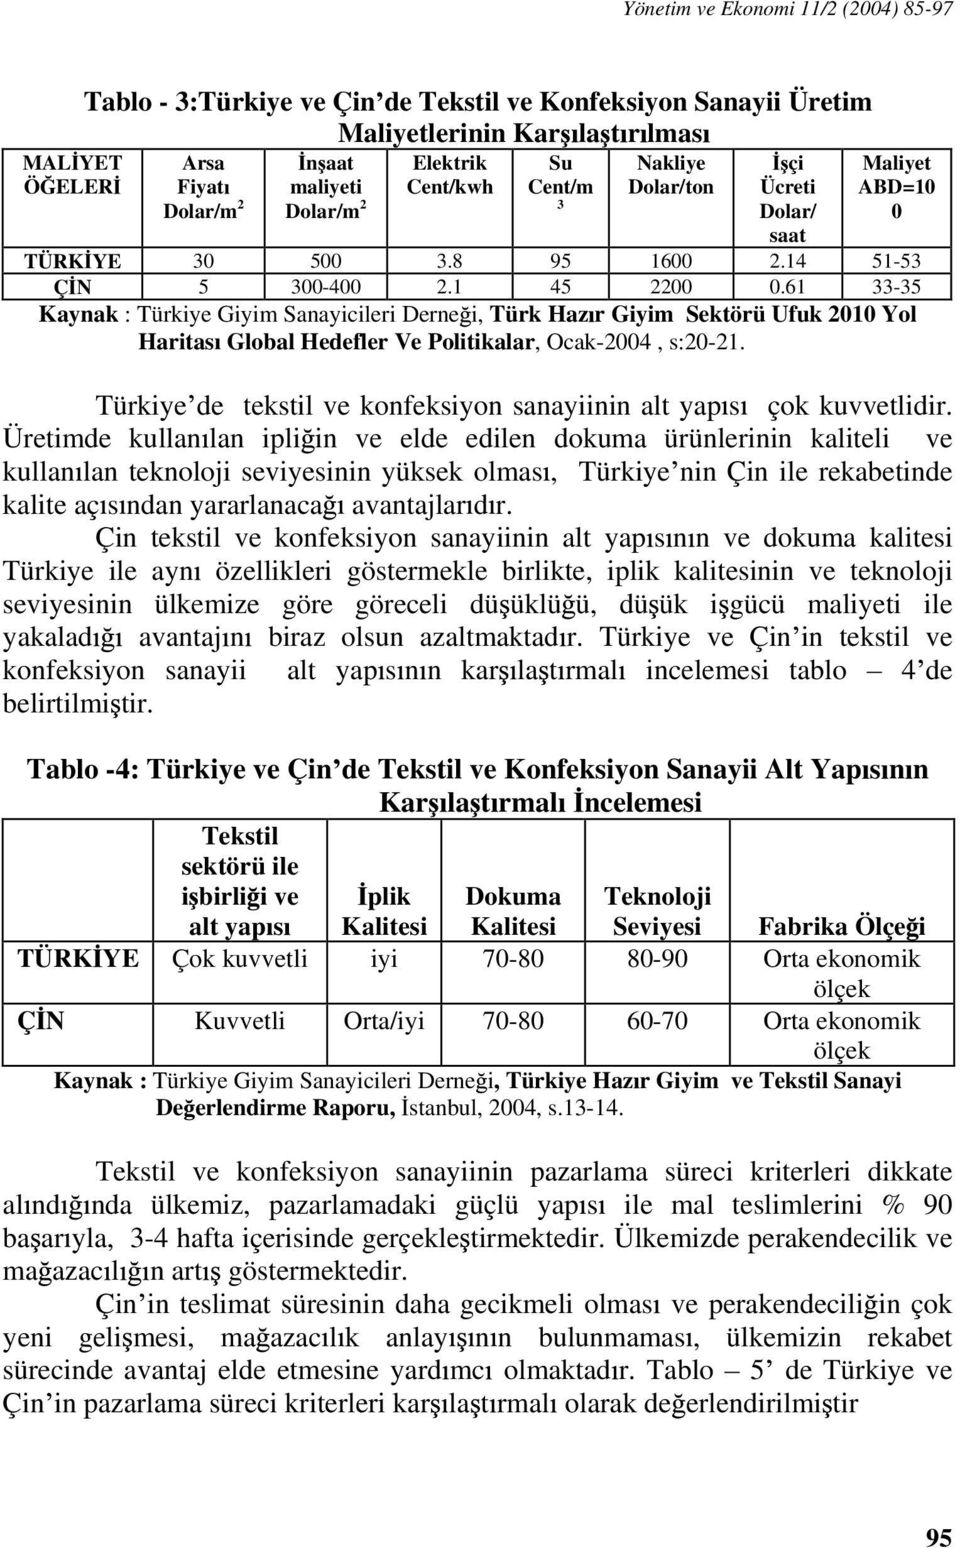 61 33-35 Kaynak : Türkiye Giyim Sanayicileri Derne i, Türk Haz r Giyim Sektörü Ufuk 2010 Yol Haritas Global Hedefler Ve Politikalar, Ocak-2004, s:20-21.